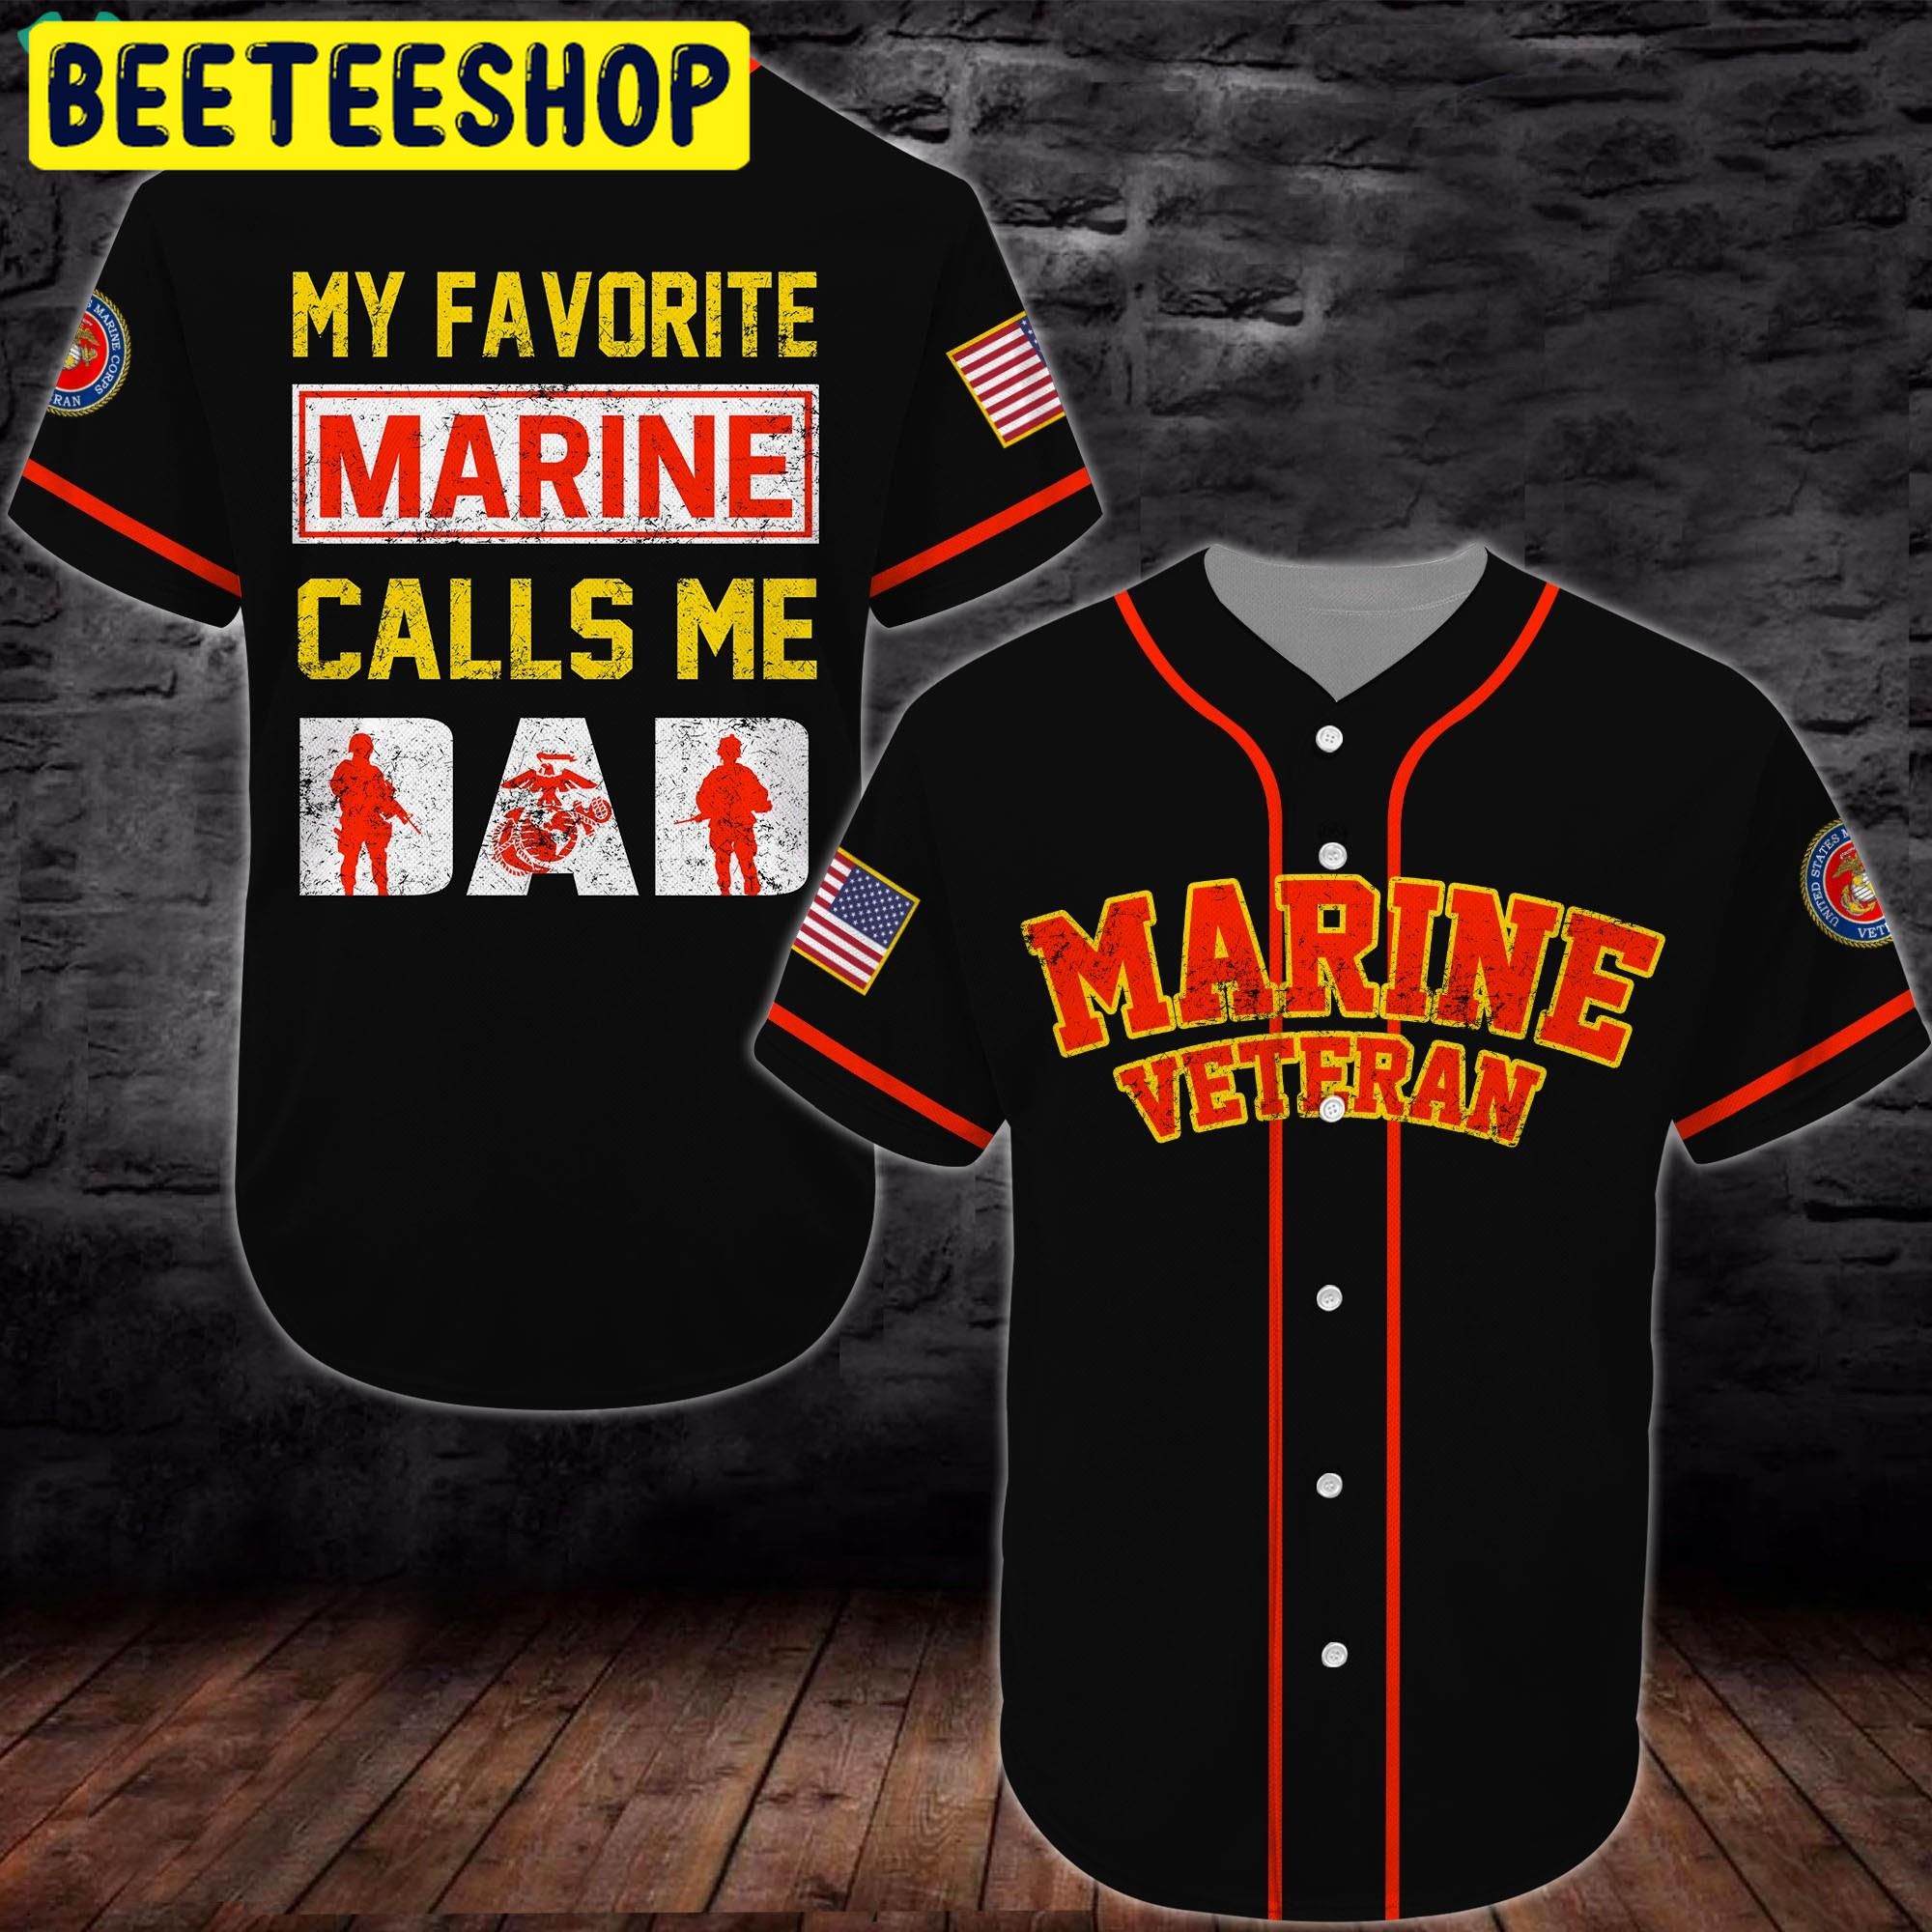 United States Marine Corps Veteran Trending Jersey Baseball